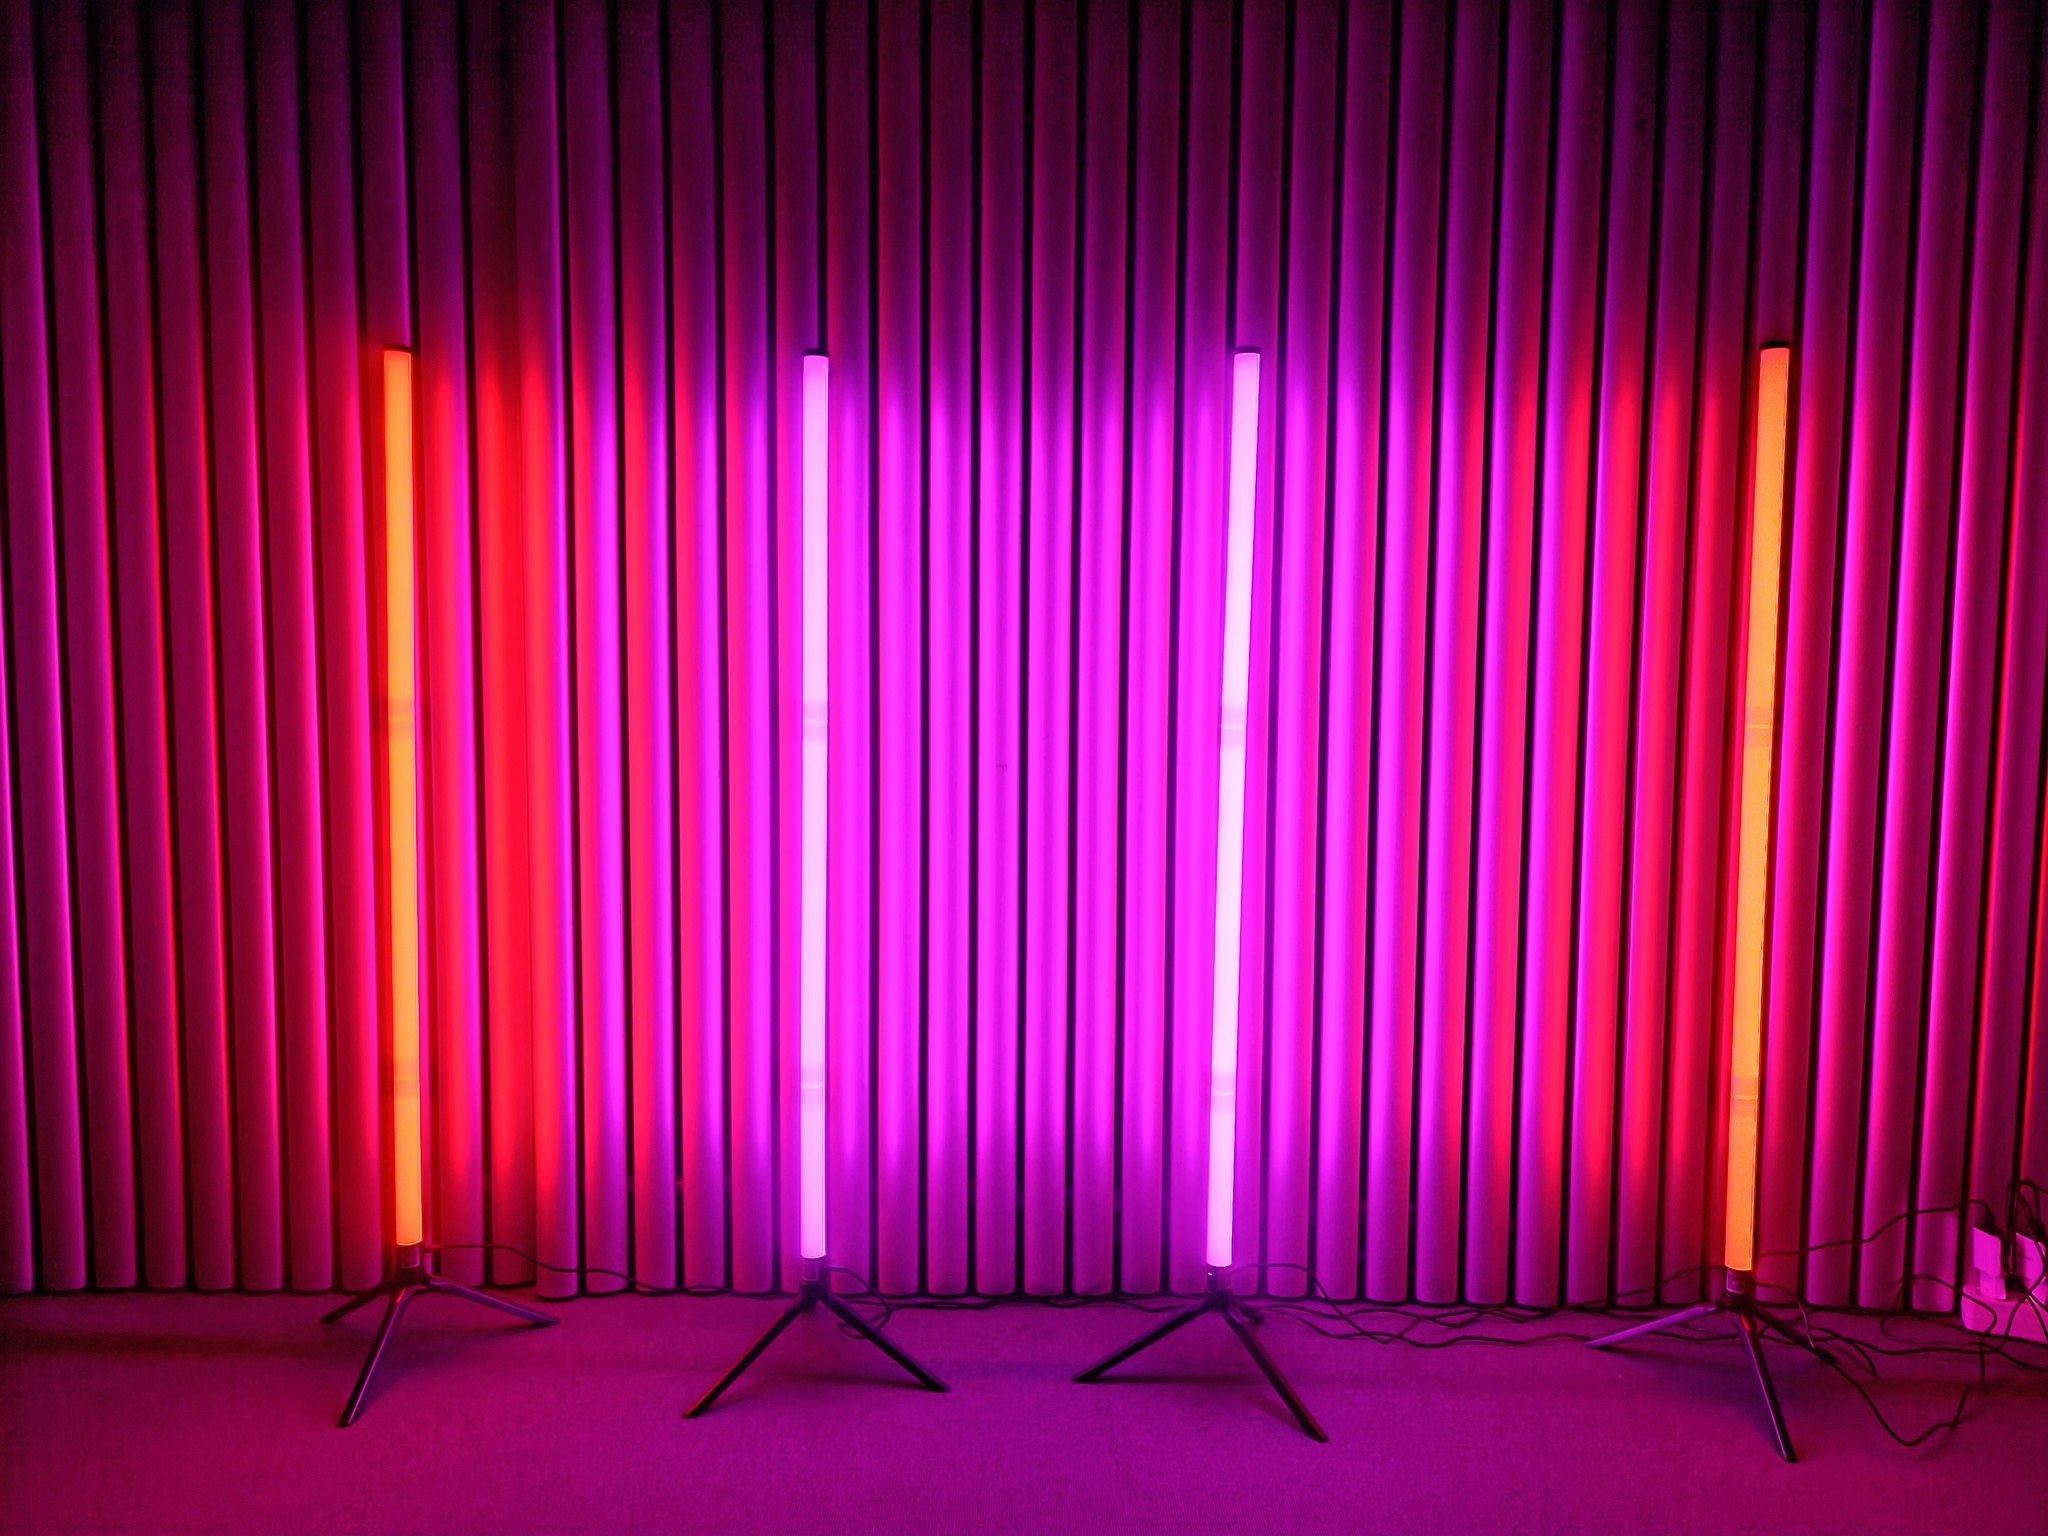 LED Sticks med RGB - 103 cm